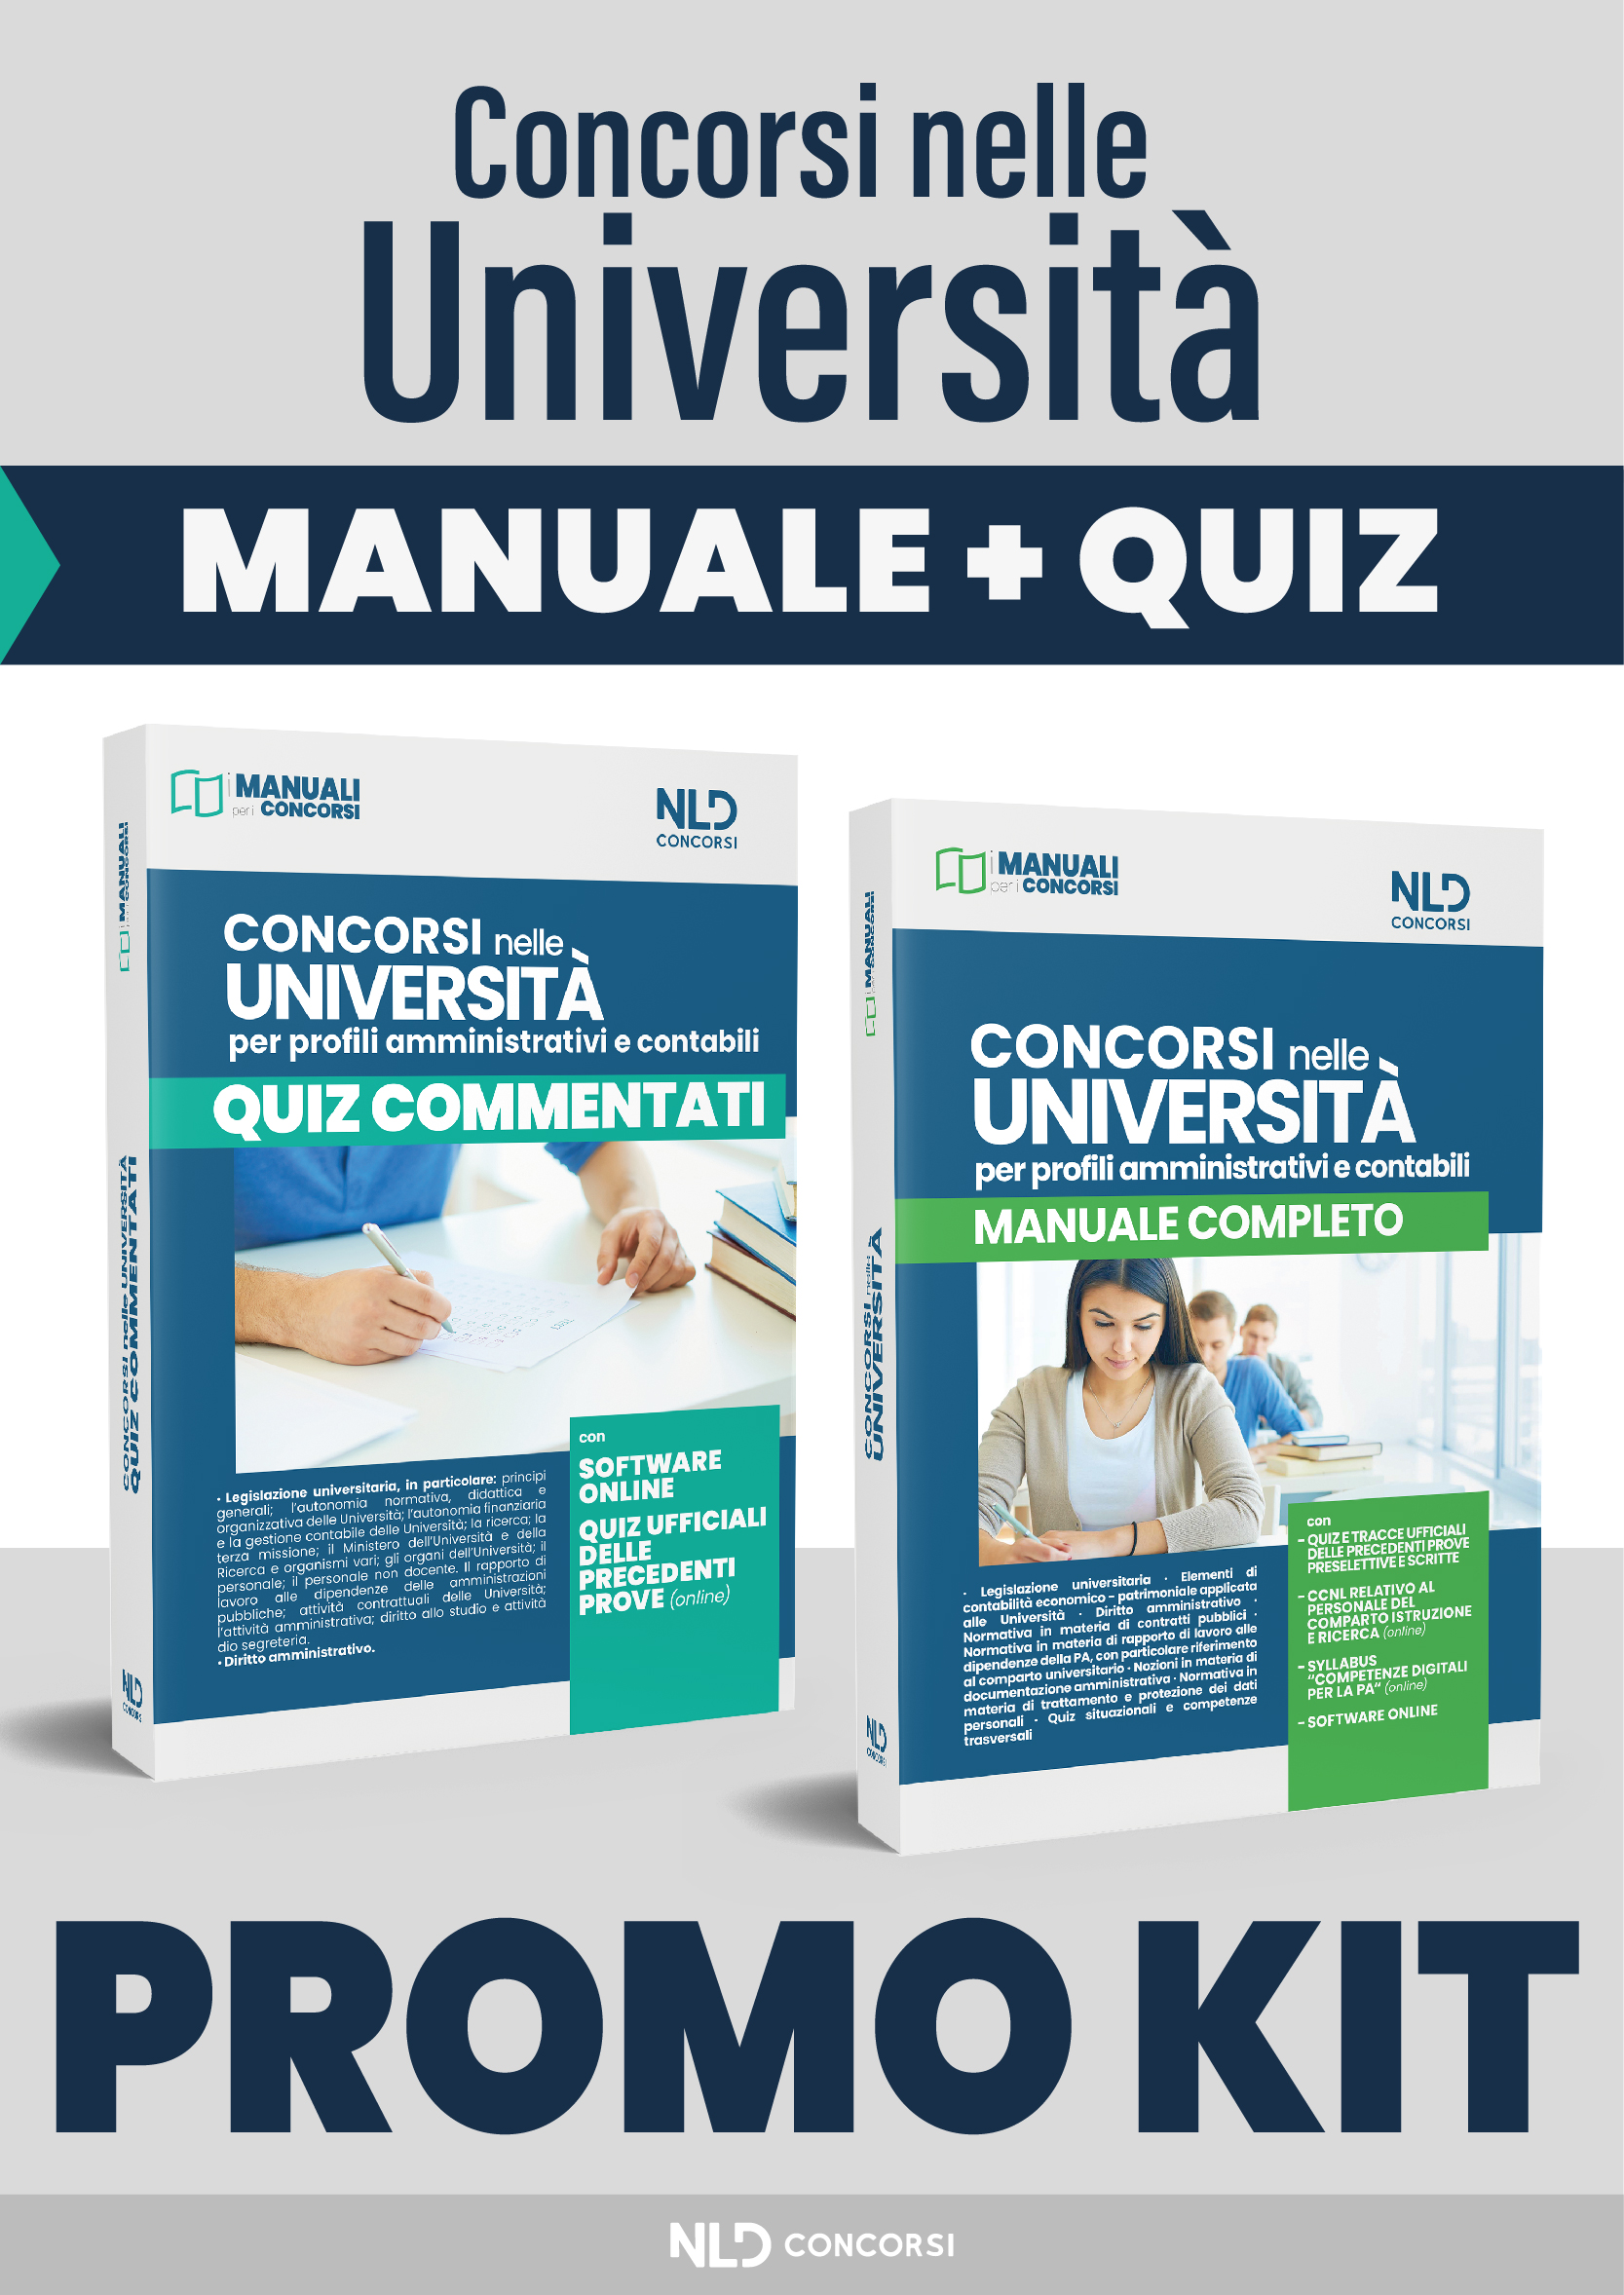 KIT Concorsi nelle Università: Manuale Completo + Quiz Commentati